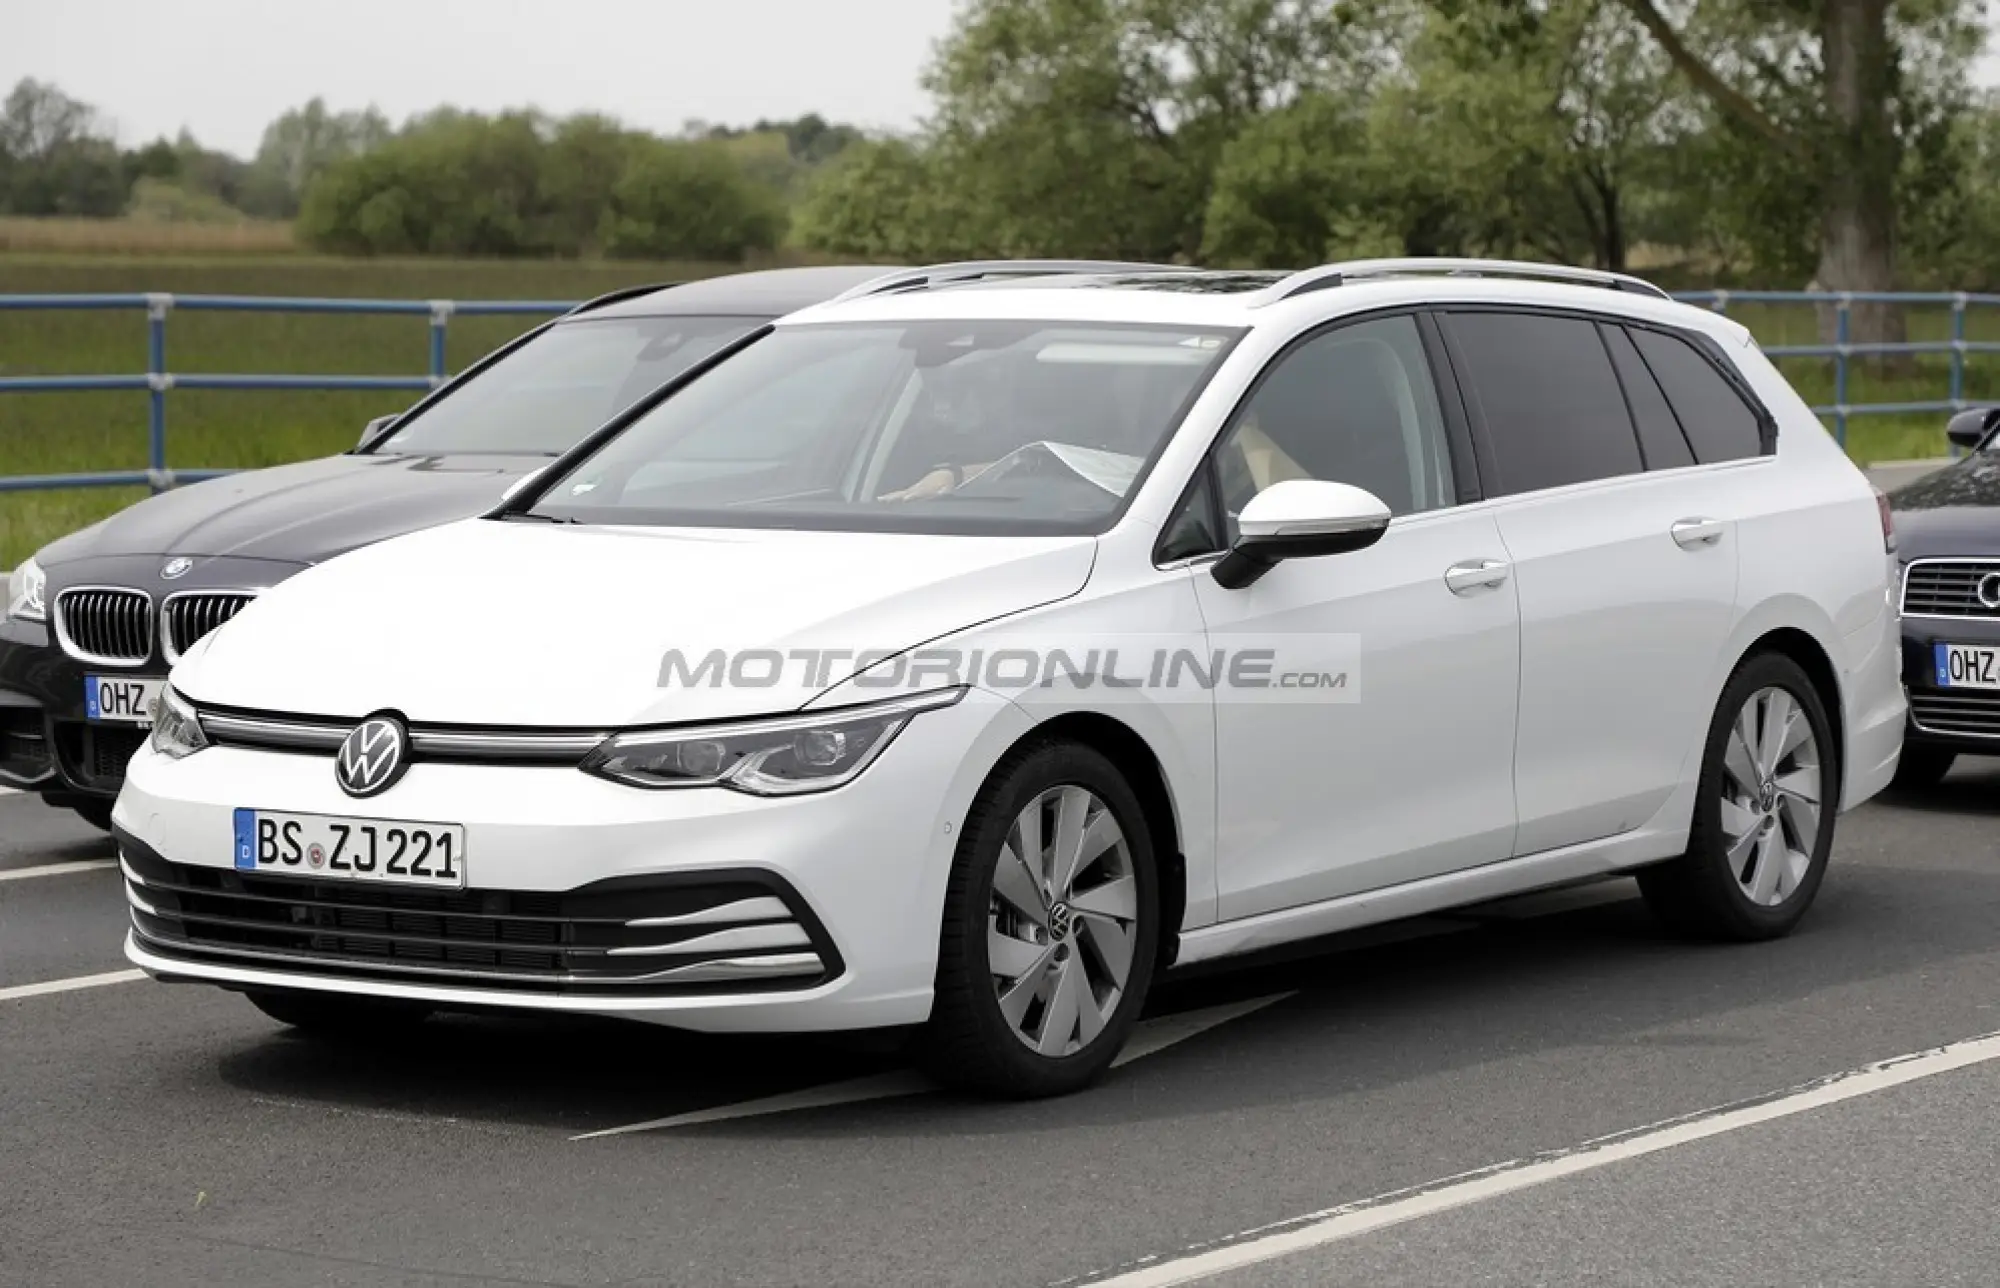 Volkswagen Golf 8 Variant - maggio 2020 - 1